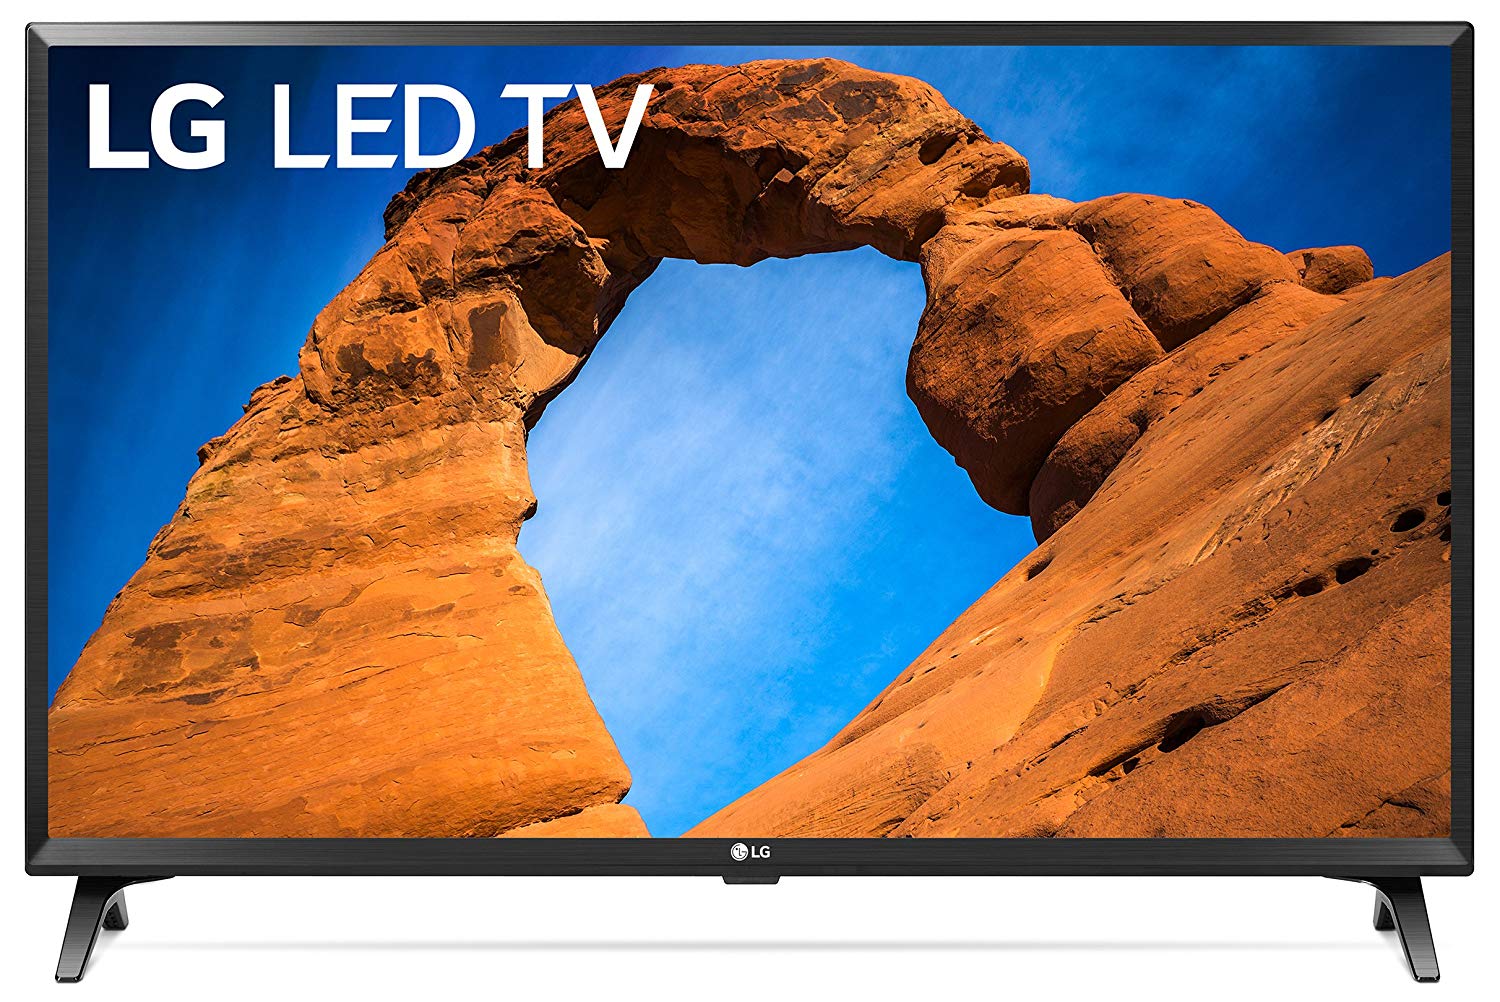 lg electronics 720p smart led tv, lg electronics 720p smart led tv review